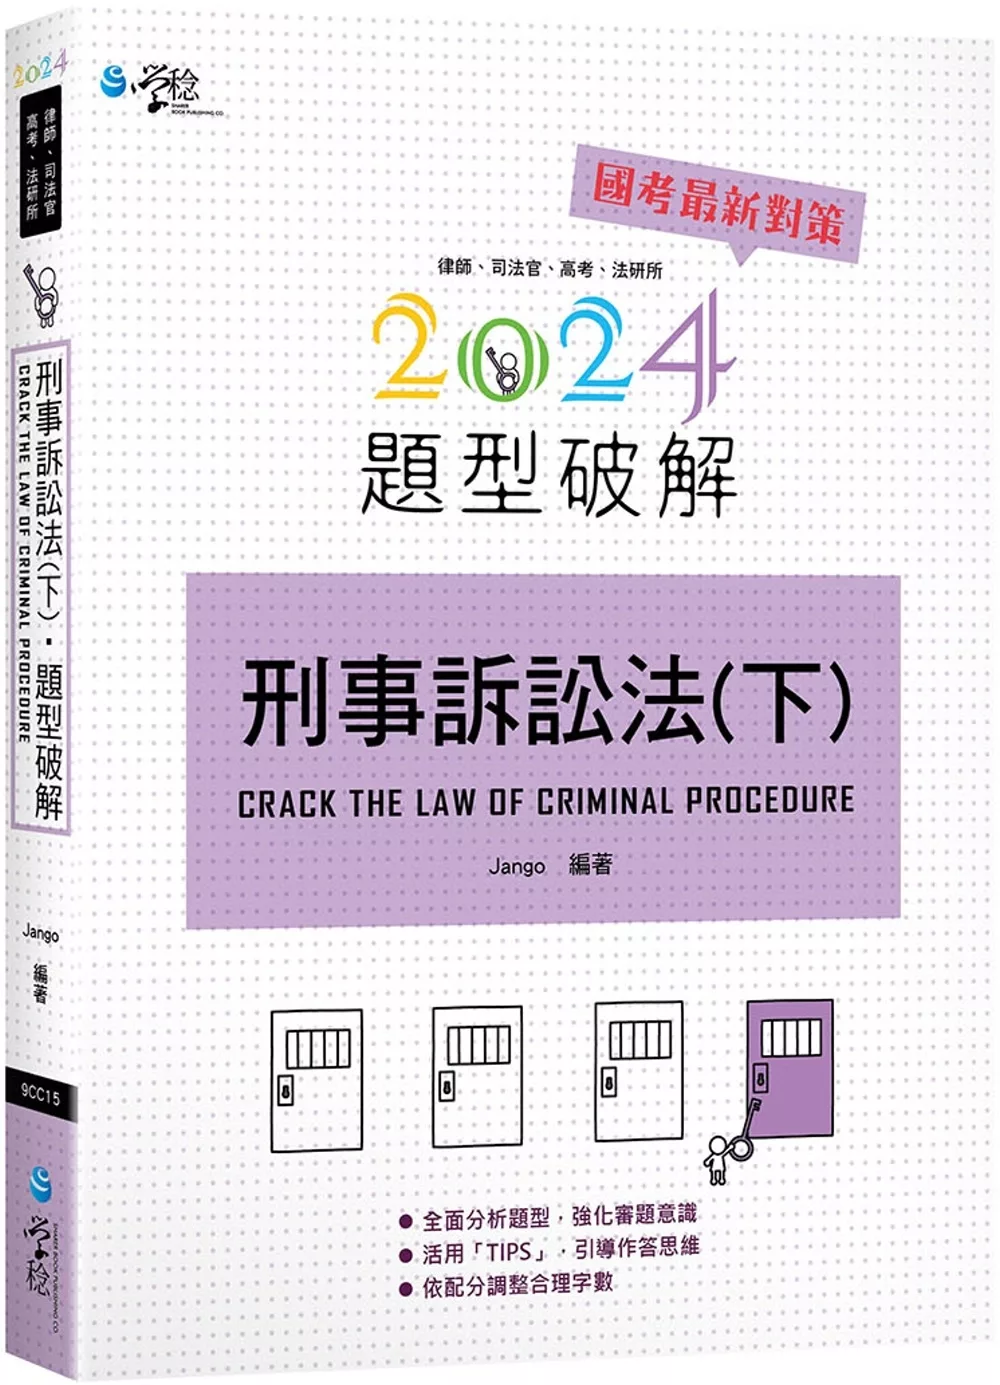 刑事訴訟法題型破解(下)(6版)